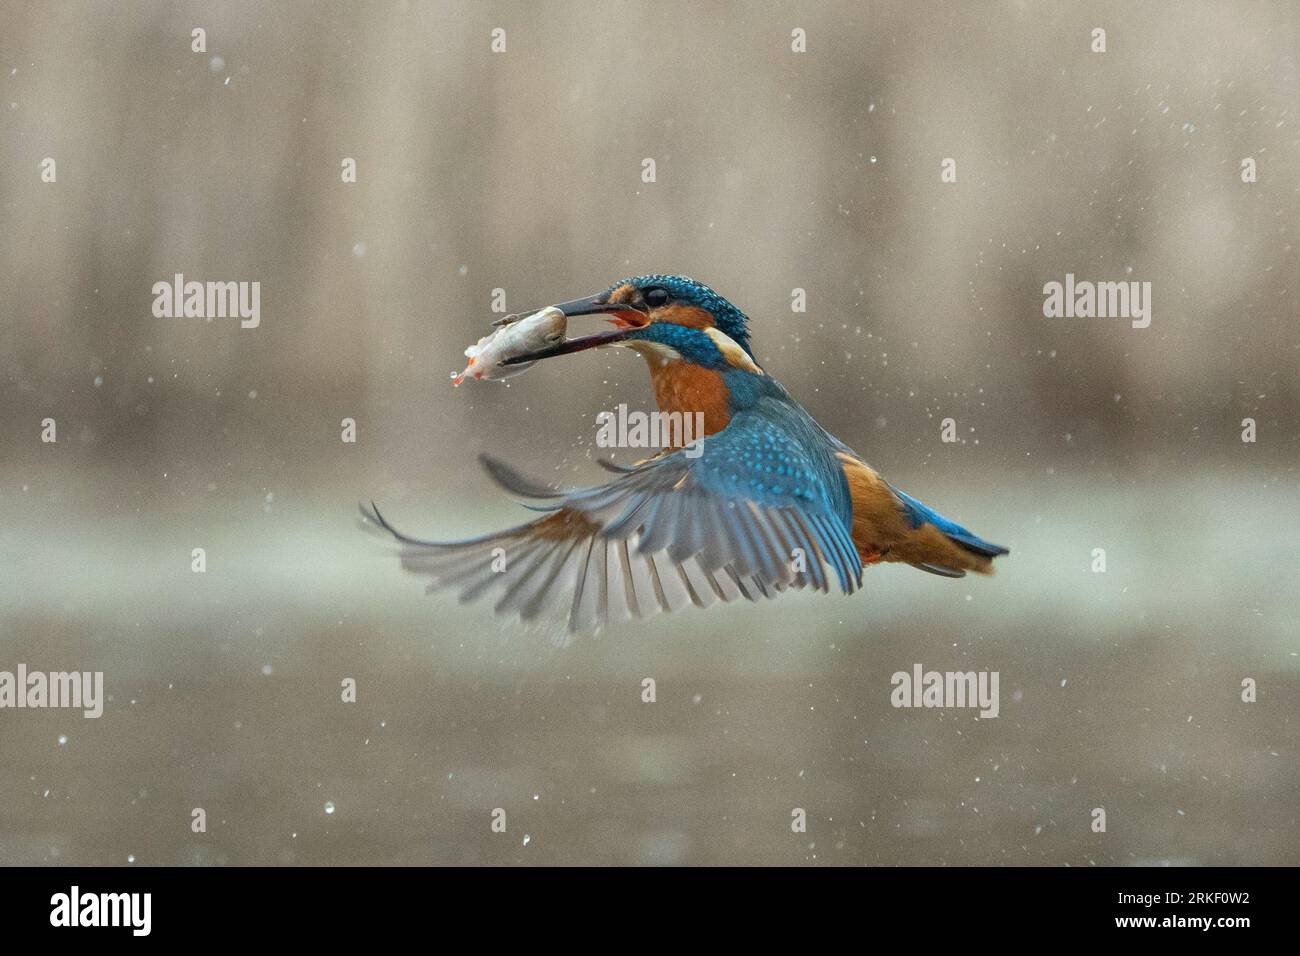 Un viaggio di pesca di successo per il kingfisher. Bourne, Inghilterra: SPLENDIDE immagini di un kingfisher che fa delle graziose immersioni e balla sotto la pioggia, gatto Foto Stock